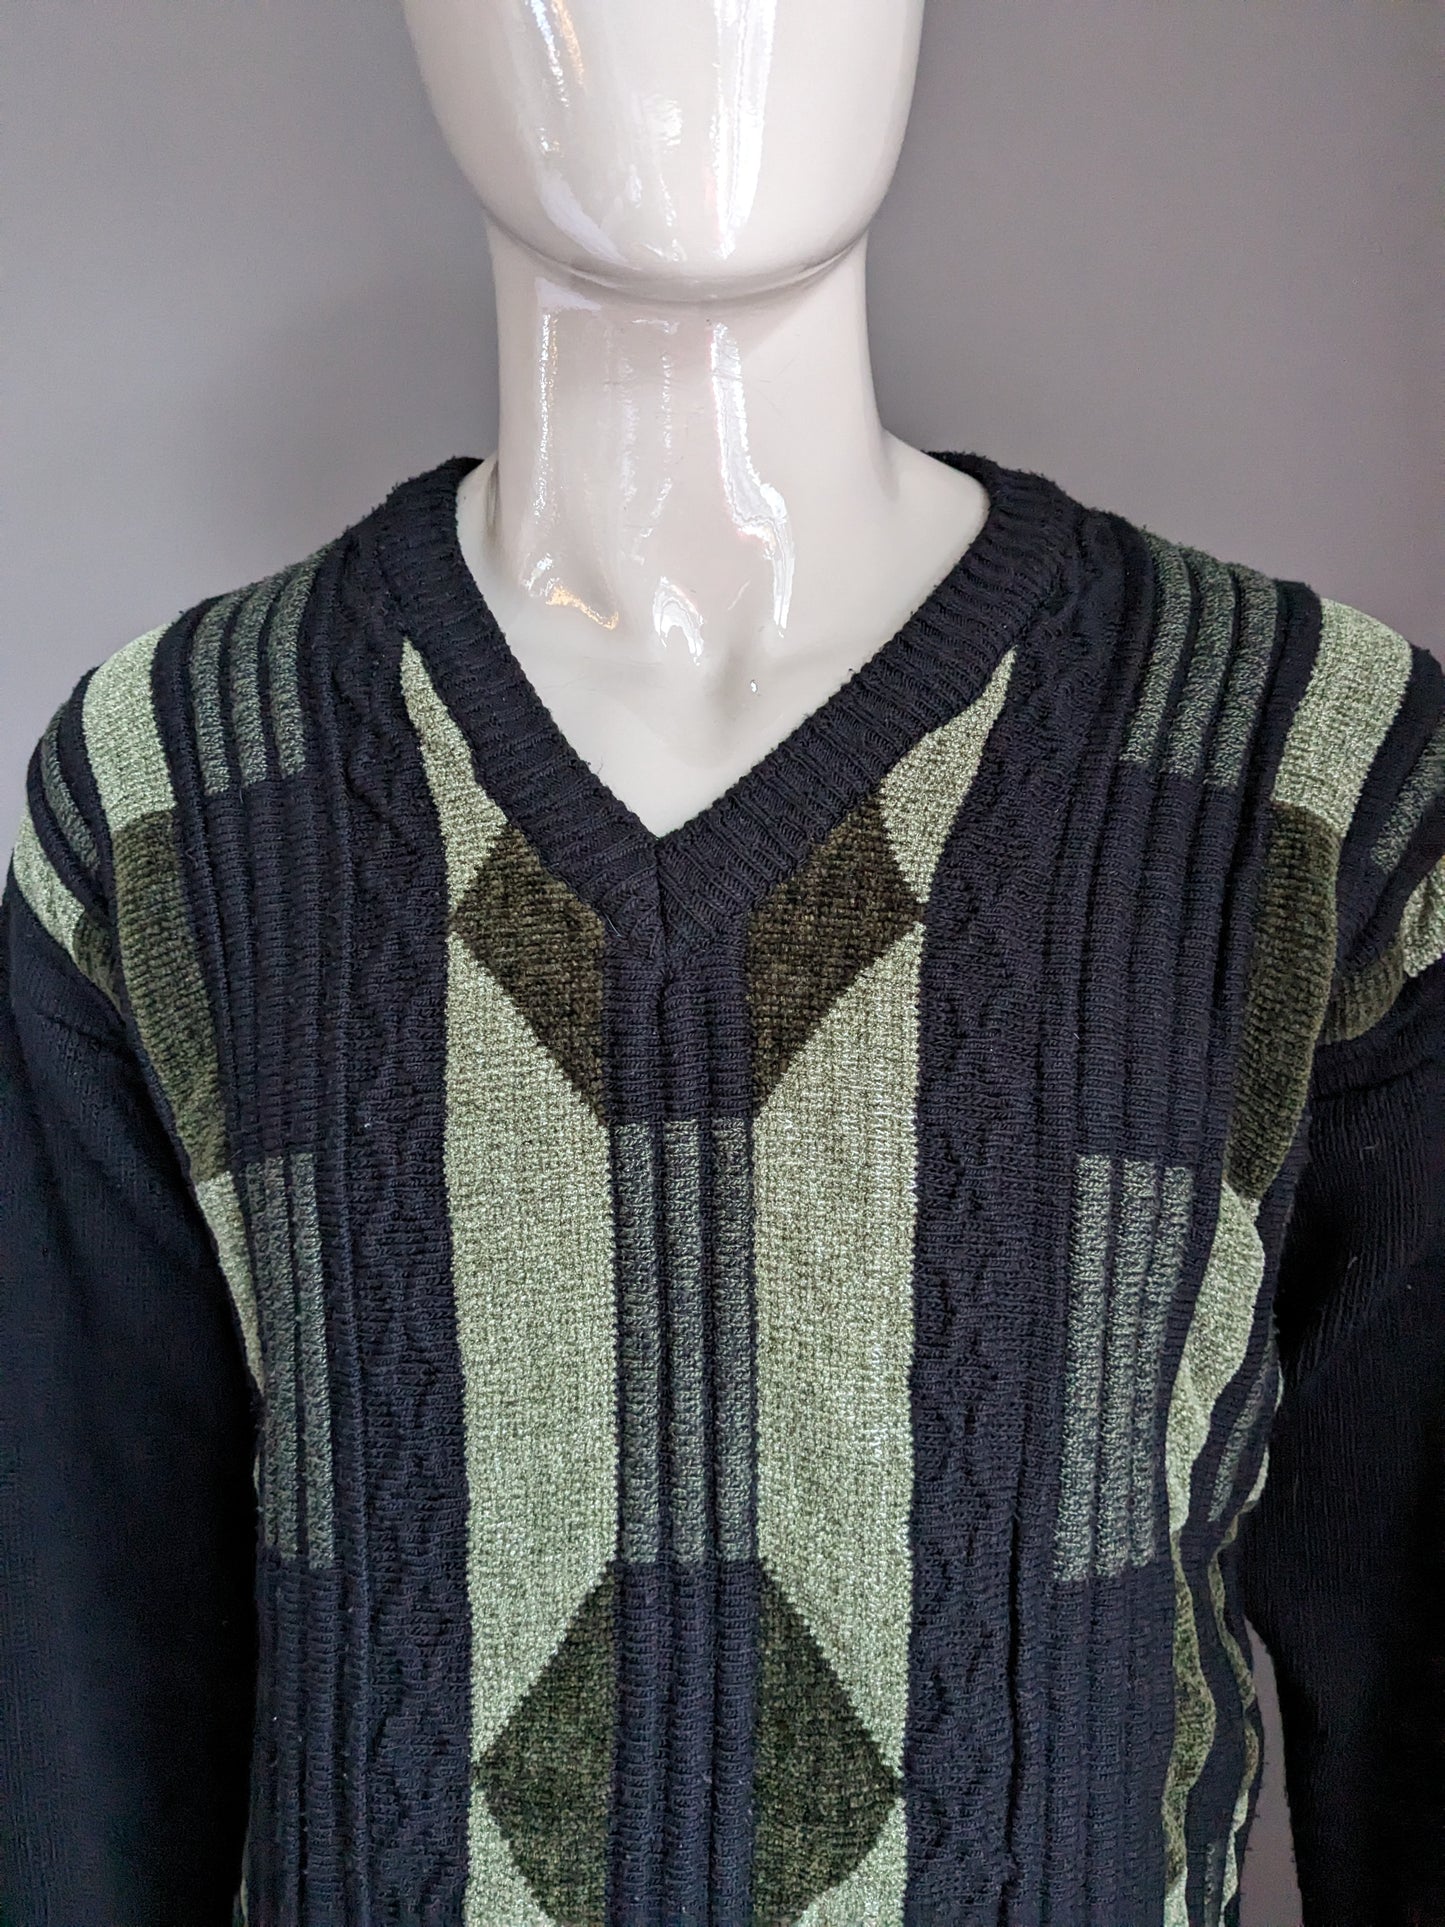 Maglione di lana vintage con scollo a V. Black Green Coloted. Taglia L.